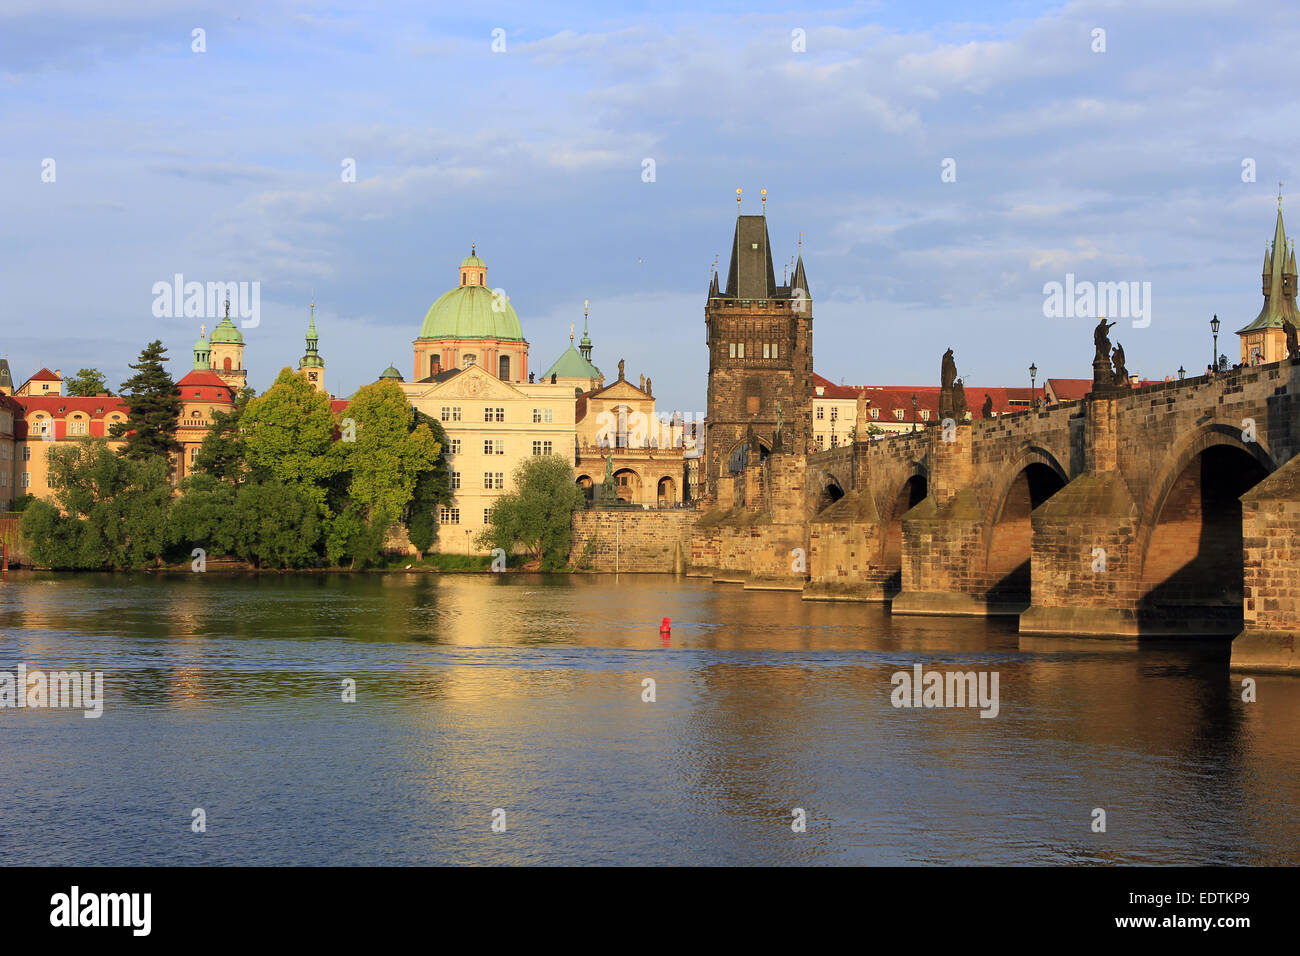 Tschechische Republik, Prag, Blick auf die Karlsbrücke an der Moldau, mit dem Altstädter Brückenturm,Czech Republic, Prague, vie Stock Photo